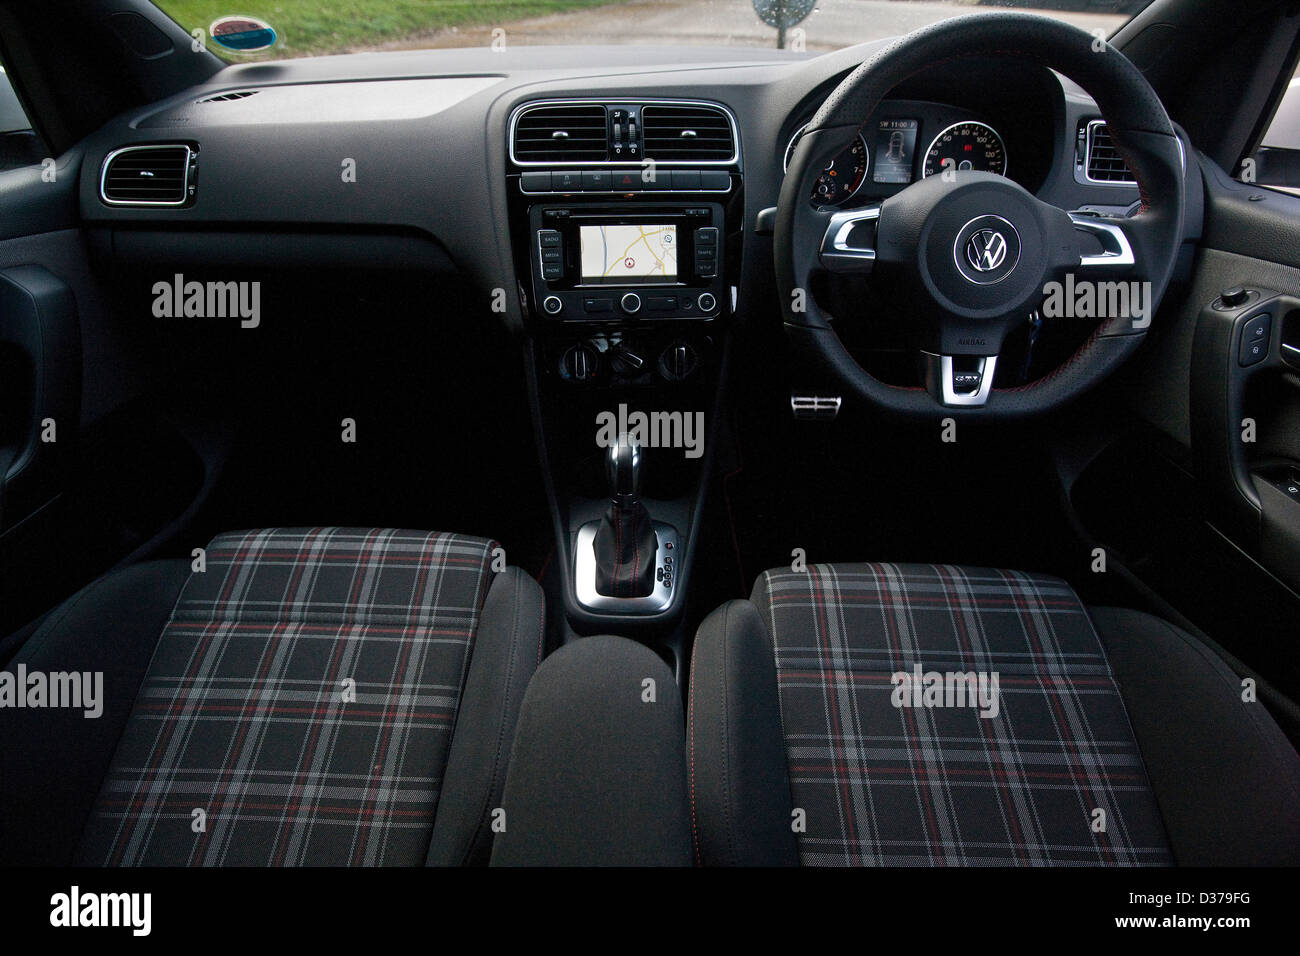 Fahrer und Beifahrer Sitze mit Lenkrad in der VW Volkswagen Polo GTI,  Winchester, England, 15 03 2011 Stockfotografie - Alamy